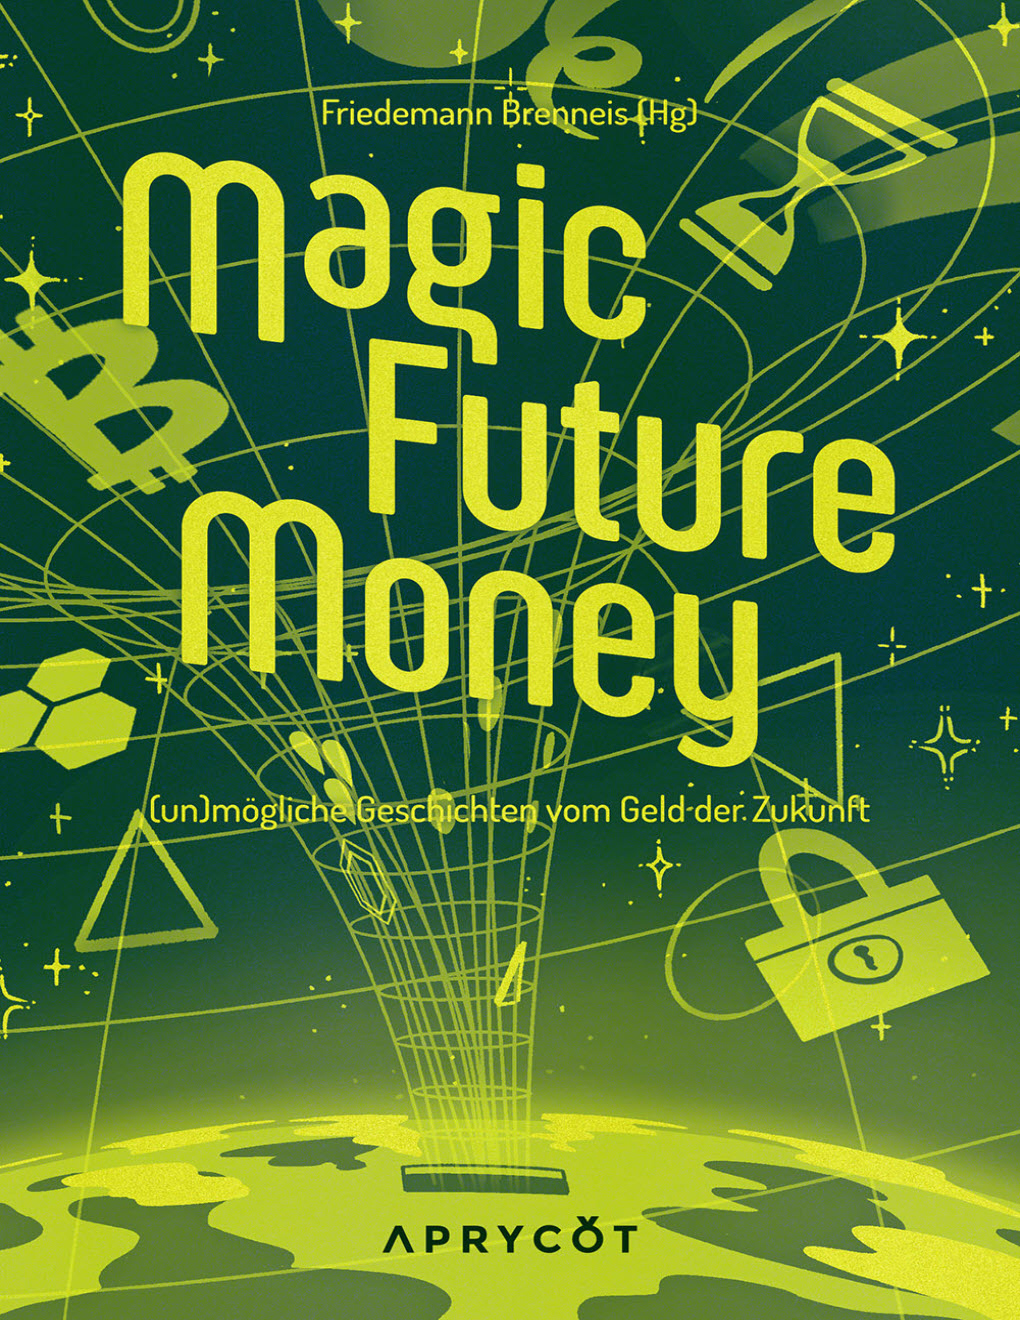 Magic Future Money